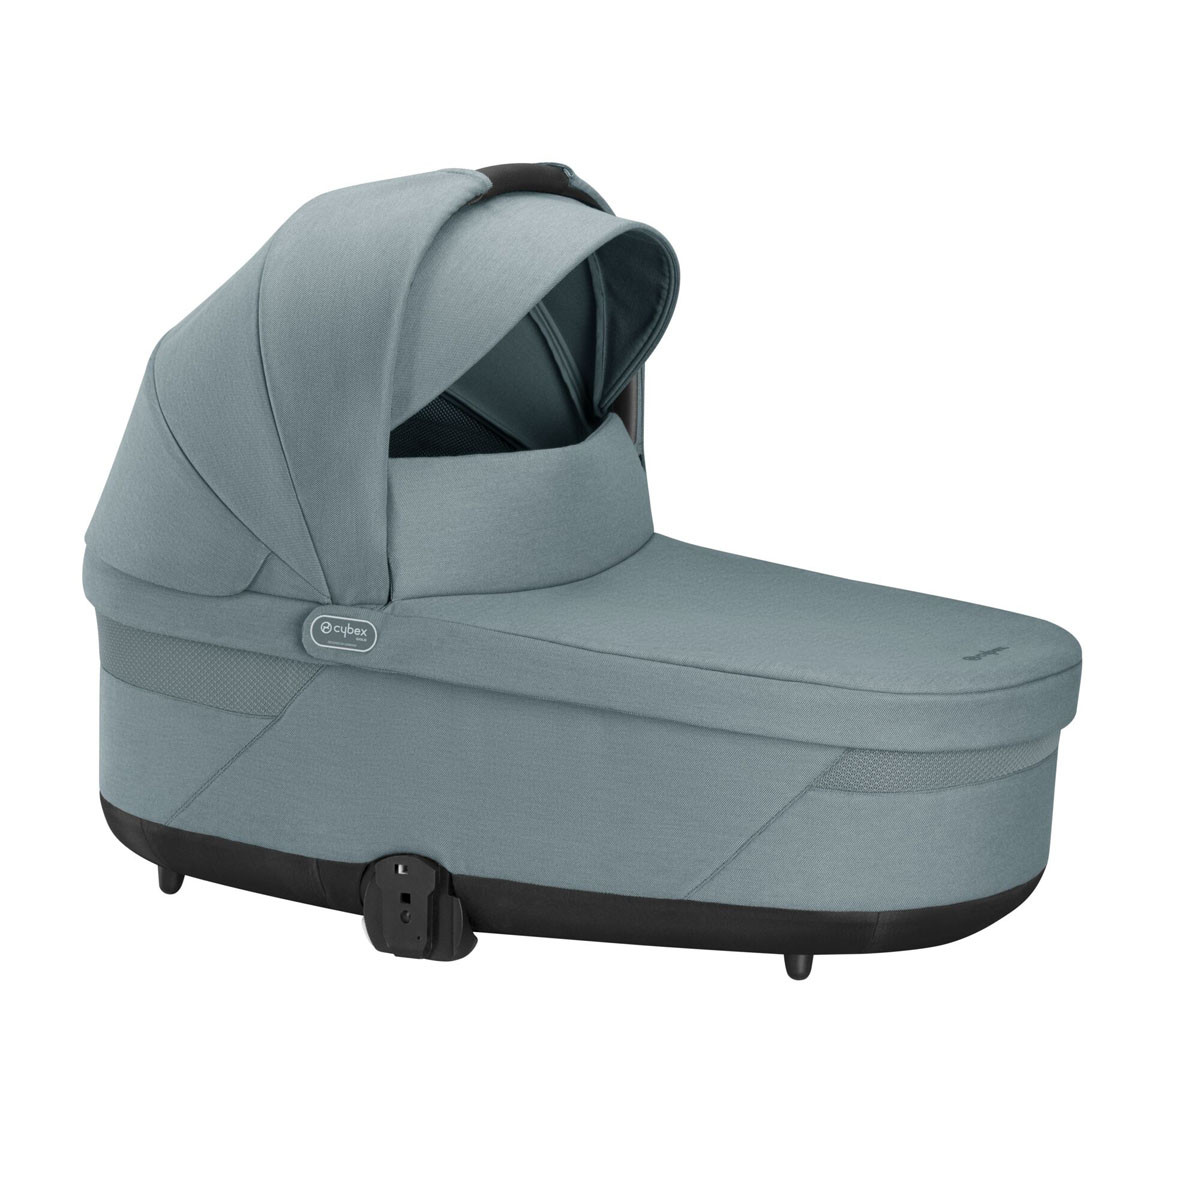 Capazo Cot S Lux 2023, protegerá a tu bebé con la capota solar UPF 50+ XXL, que incluye un visor y una ventana de malla.